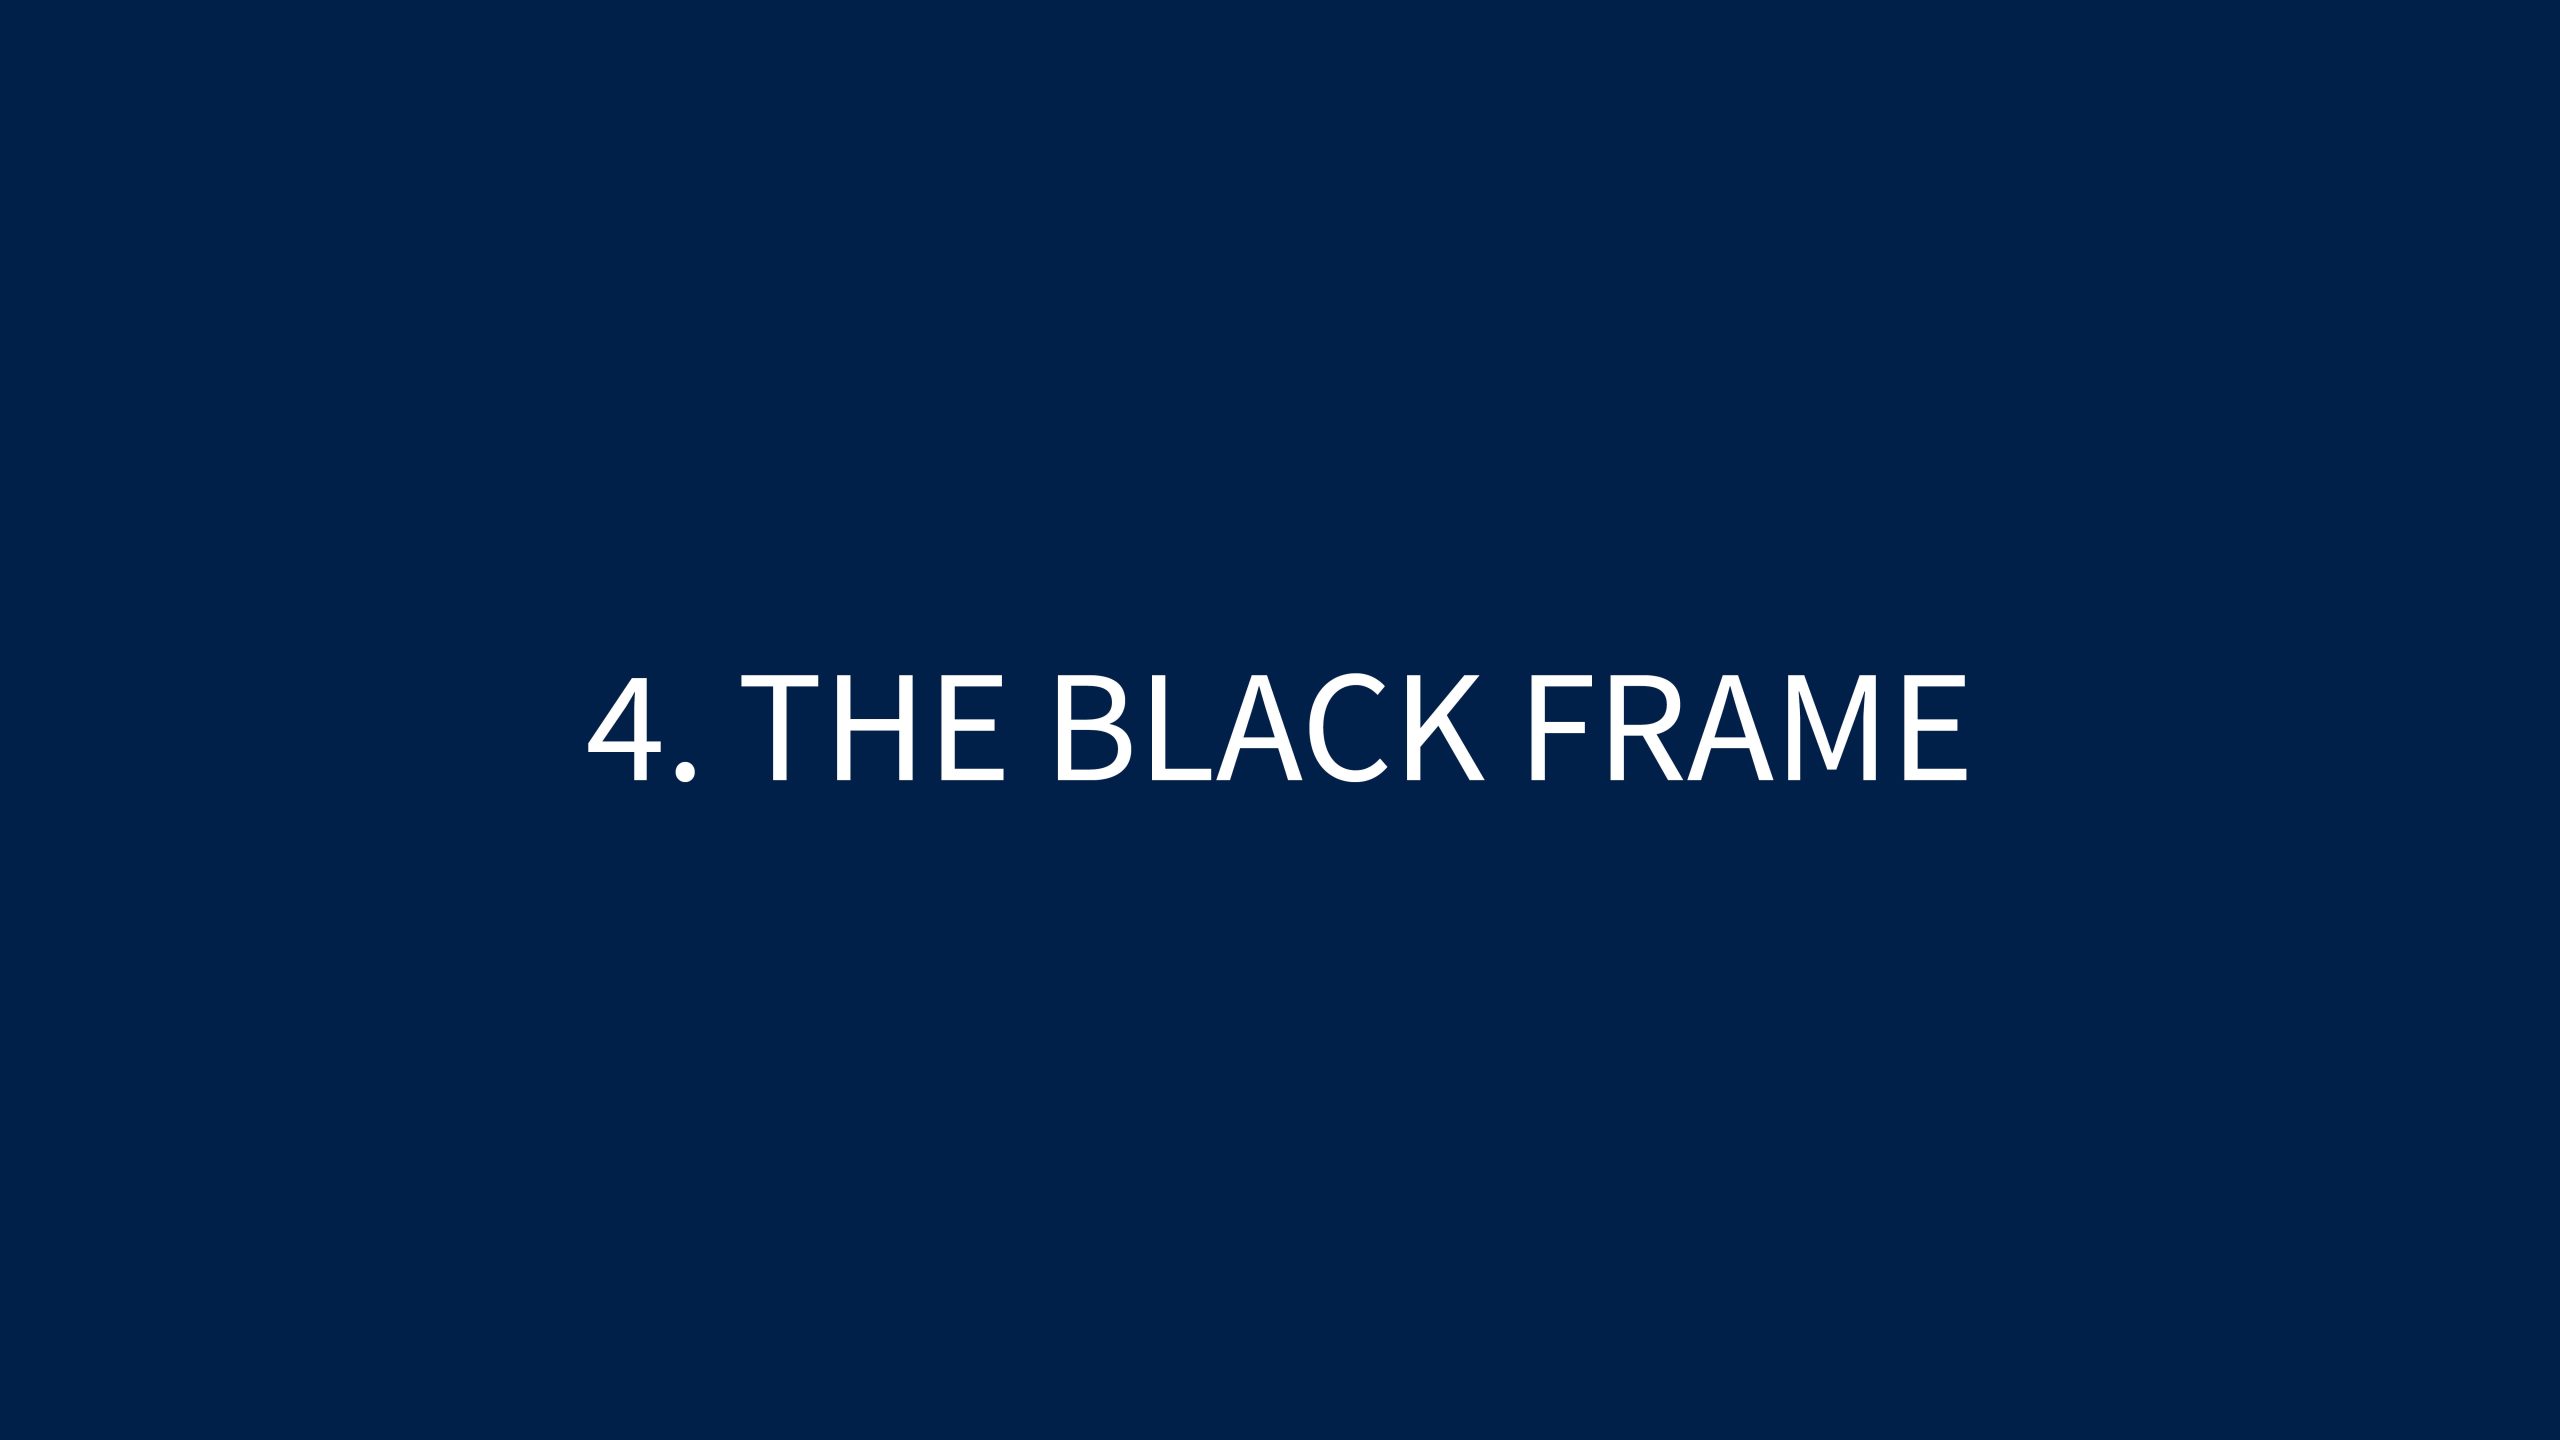 4 THE BLACK FRAME